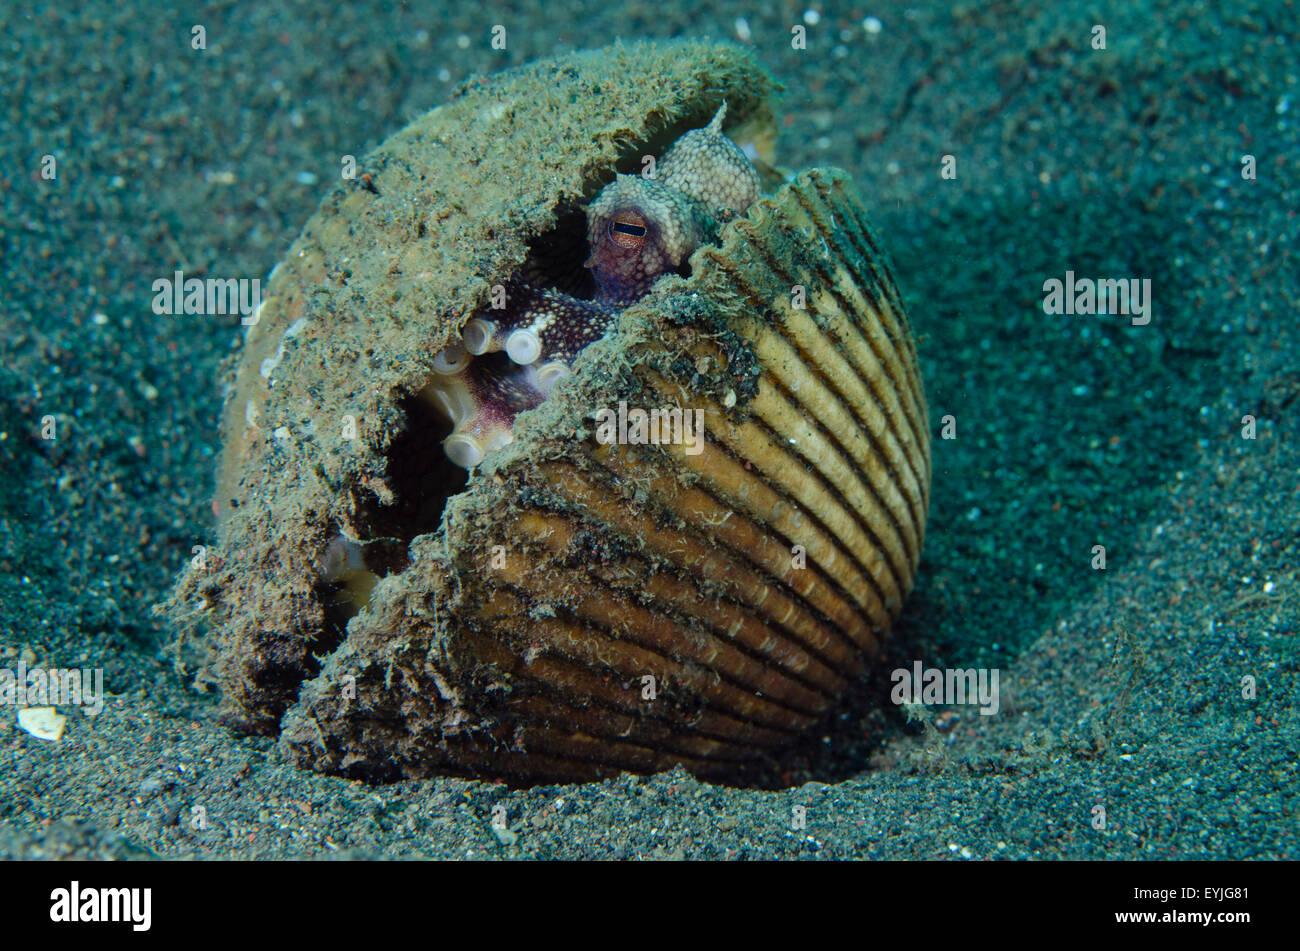 Kokosnuss Oktopus, Amphioctopus Marginatus, lebt in einer verlassenen Clam-Shell Puri Jati, Seririt, Nord Bali, Indonesien Stockfoto